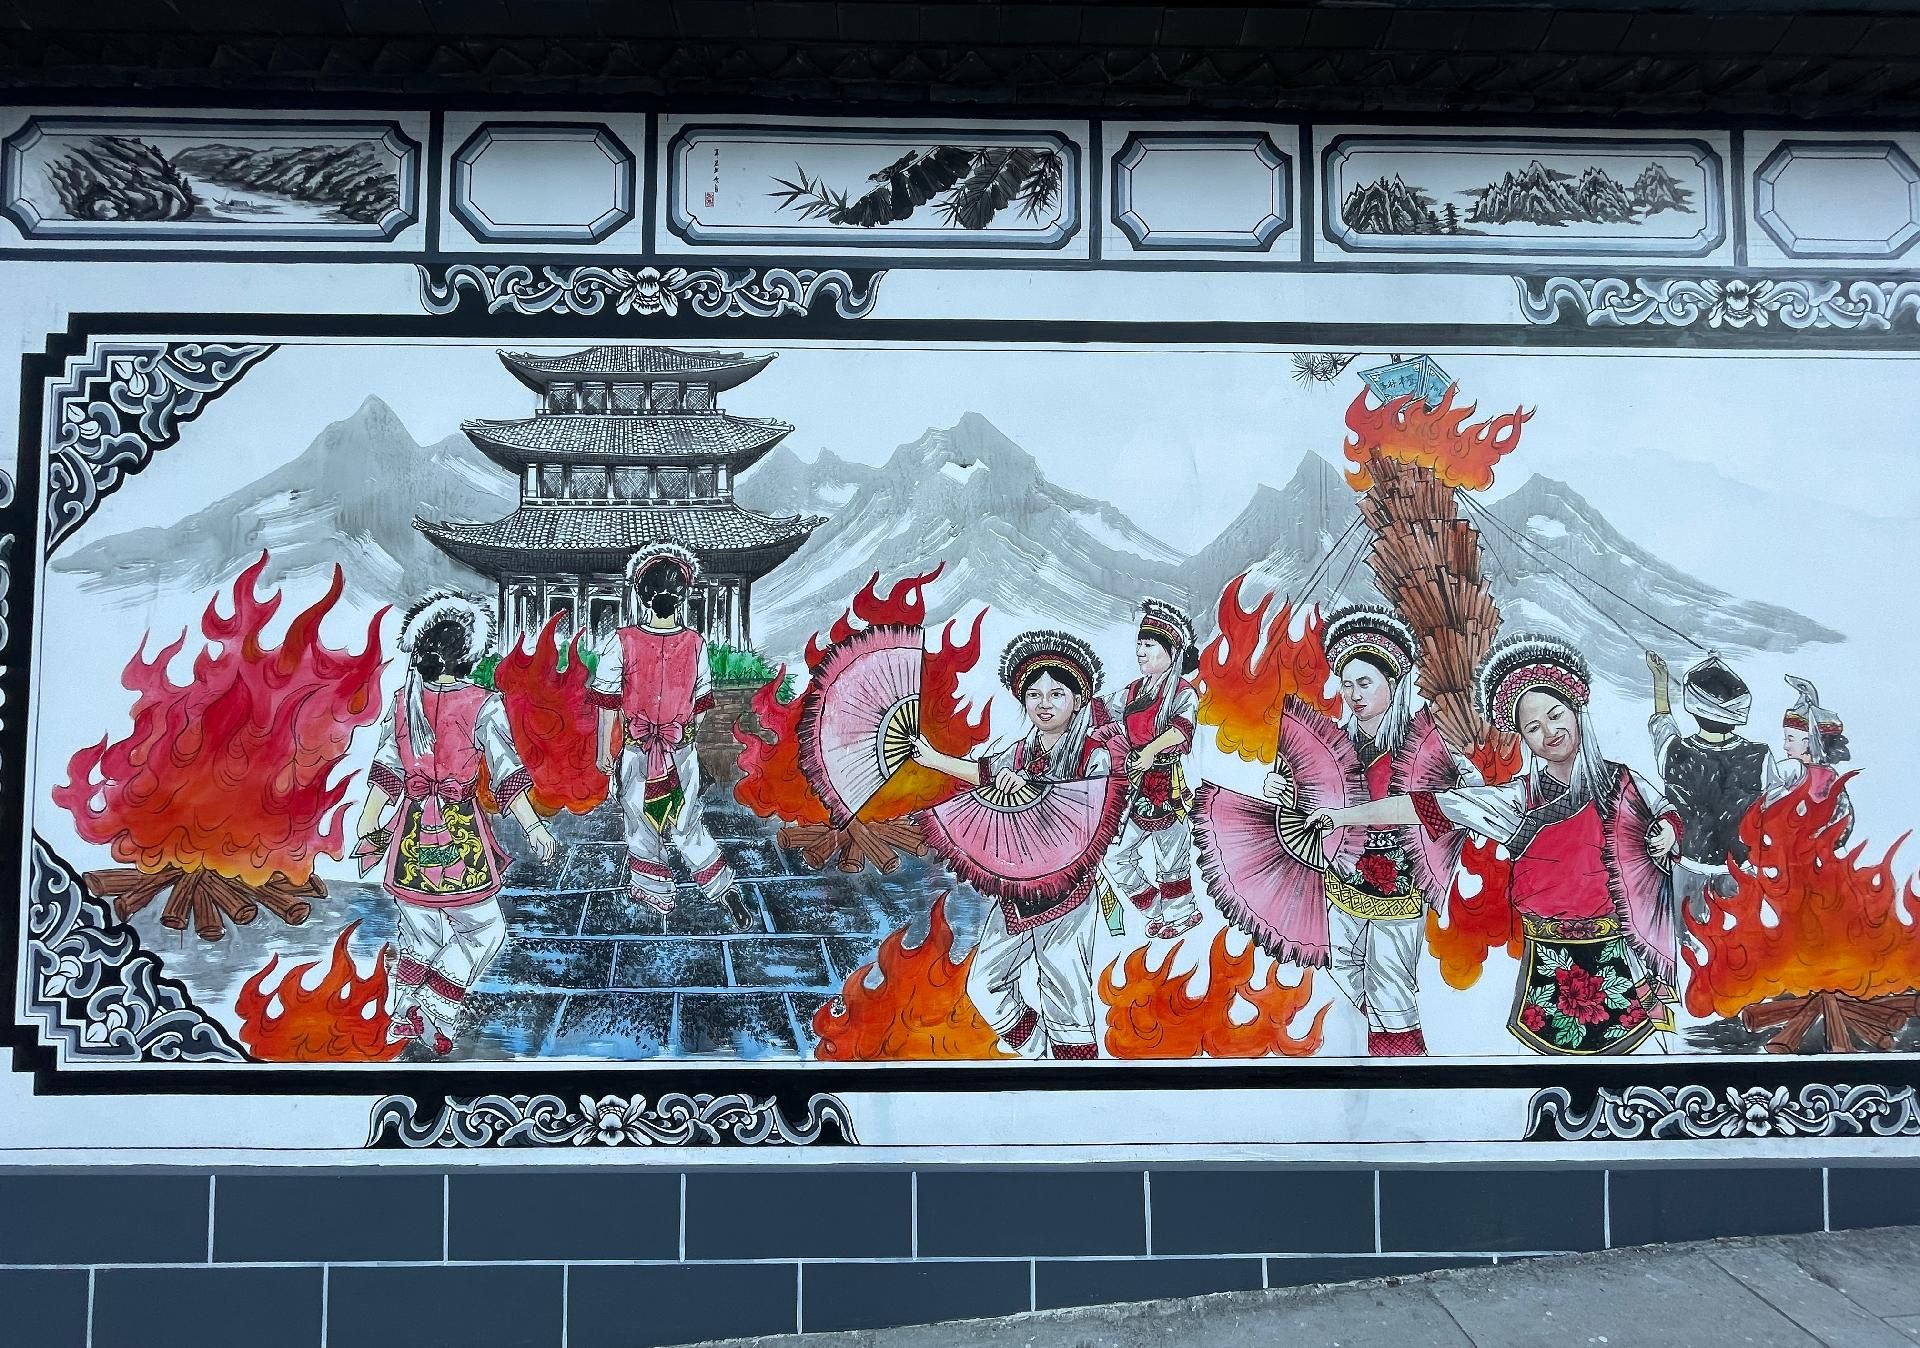 走进鹤峰县铁炉白族乡,一幅幅蕴含白族文化特色的彩色墙体画映入眼帘